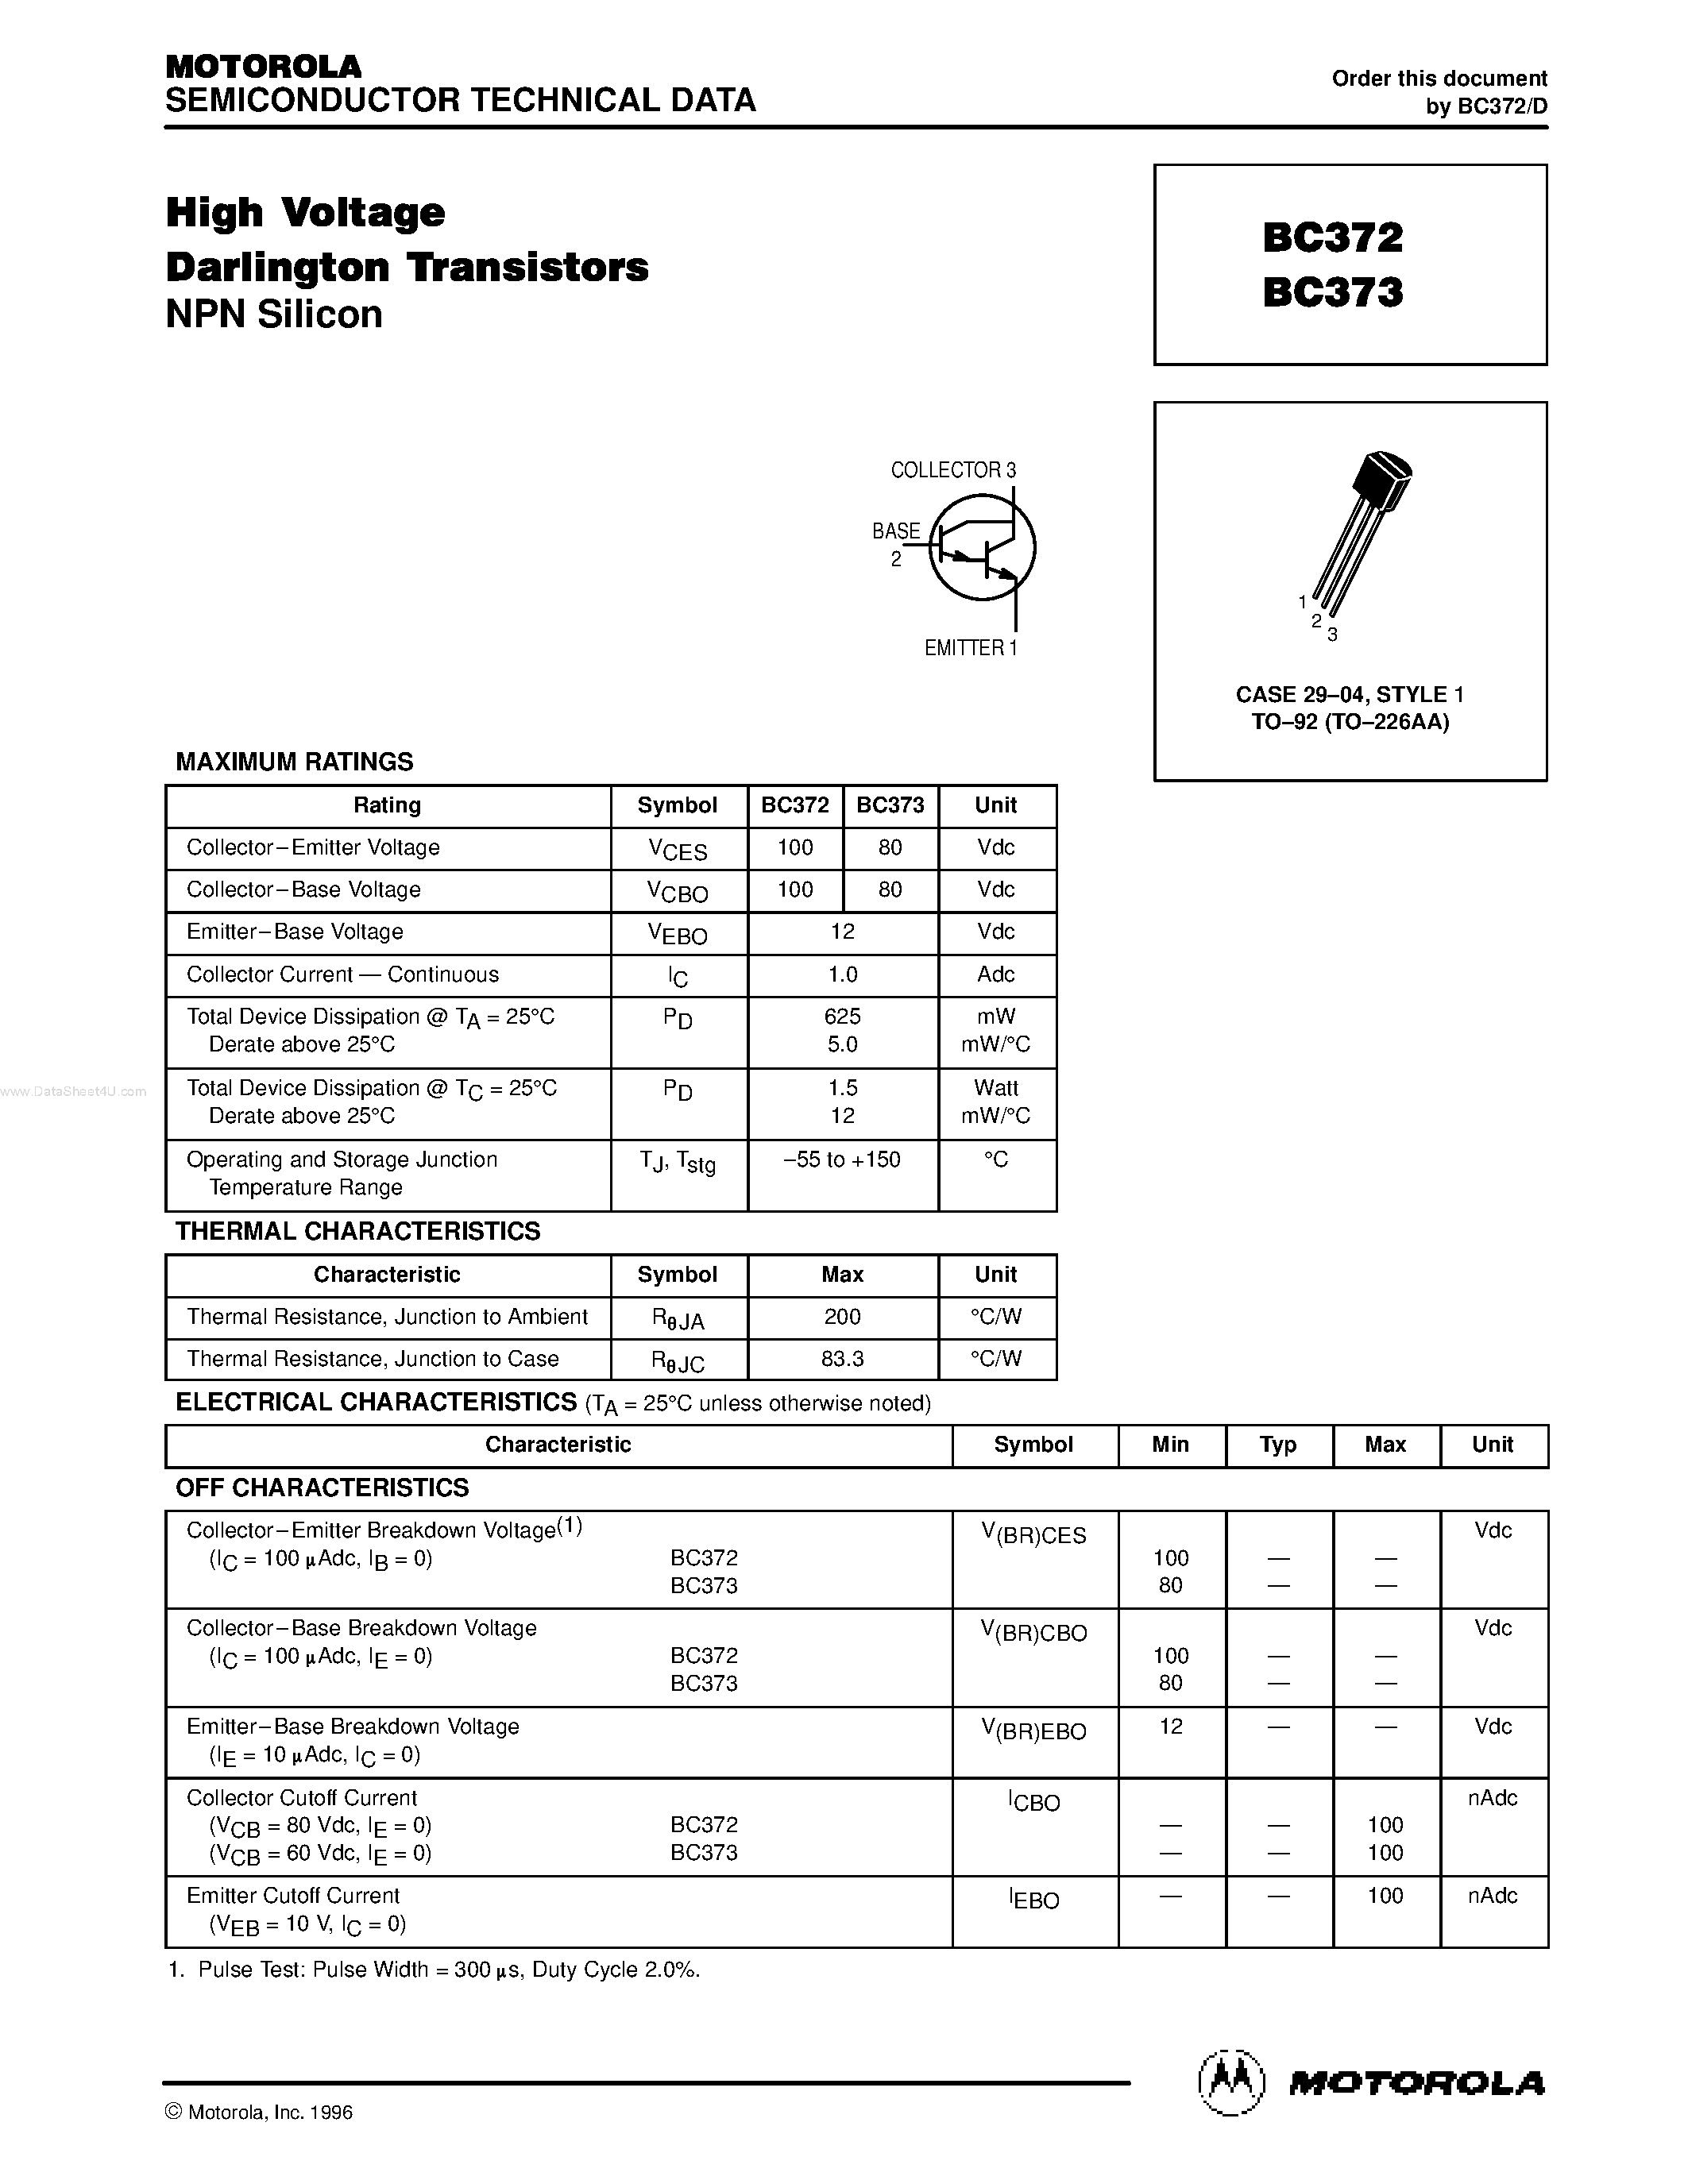 Даташит BC372 - High Voltage Darlington Transistors страница 1